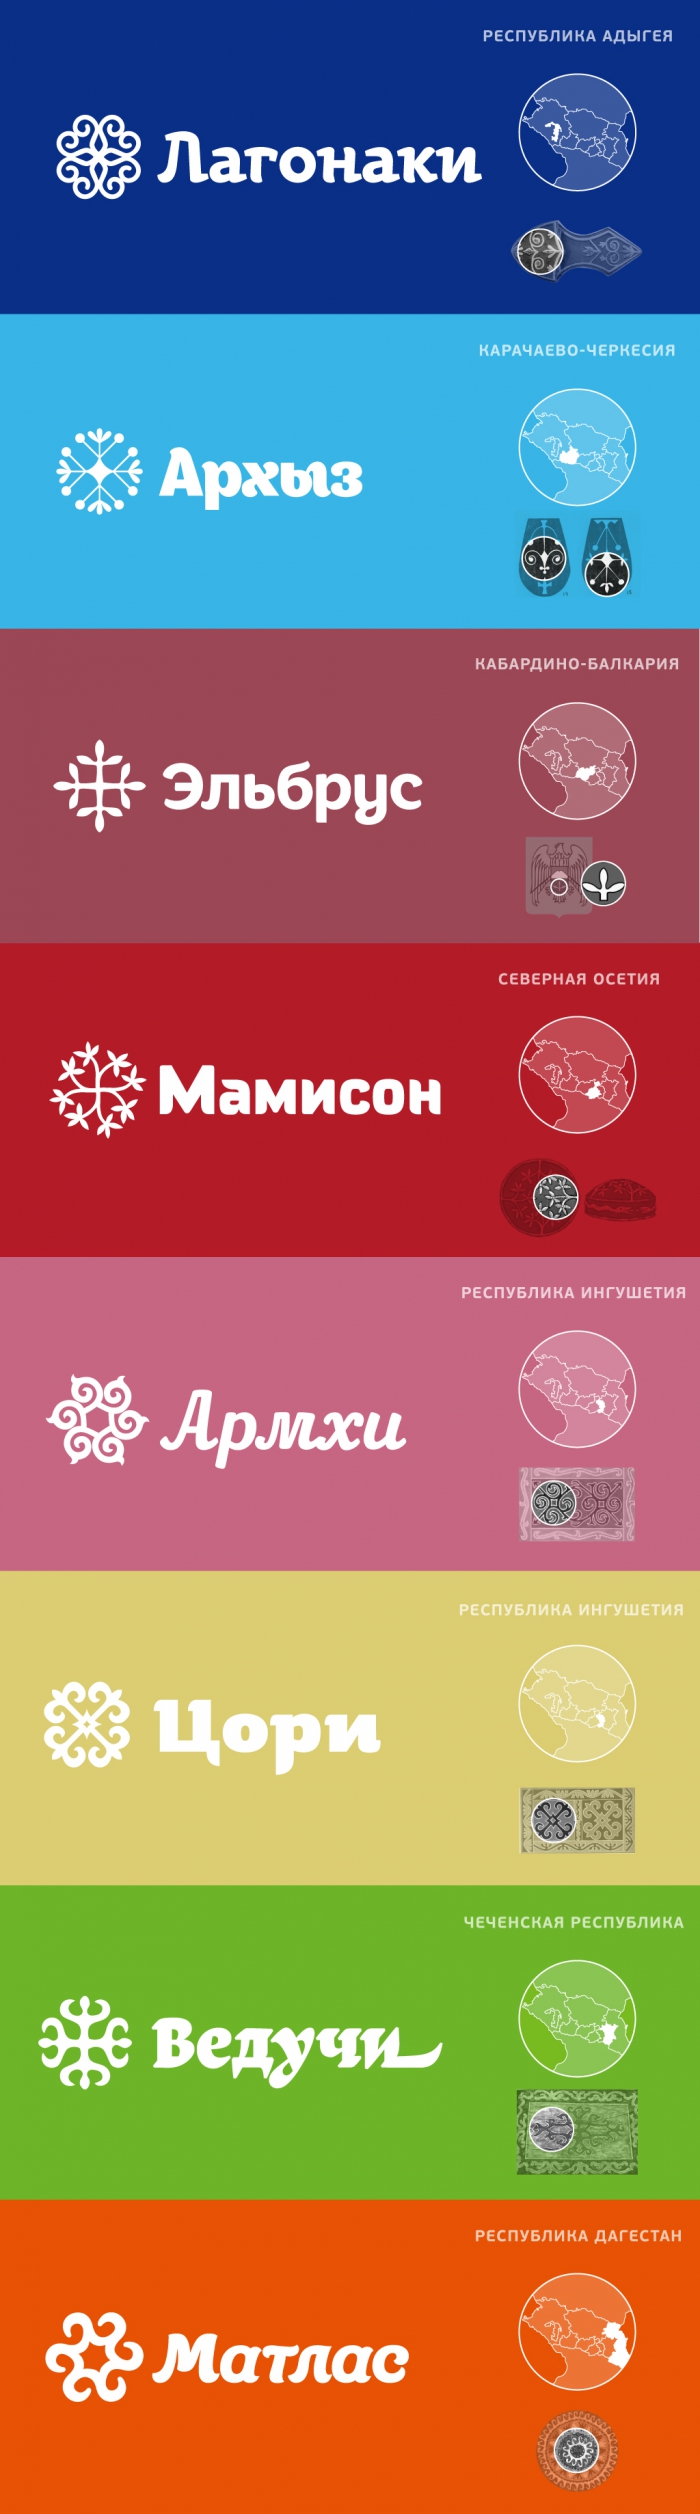 Элементы фирменного стиля для отдельных курортов Северного Кавказа, 2014 год.